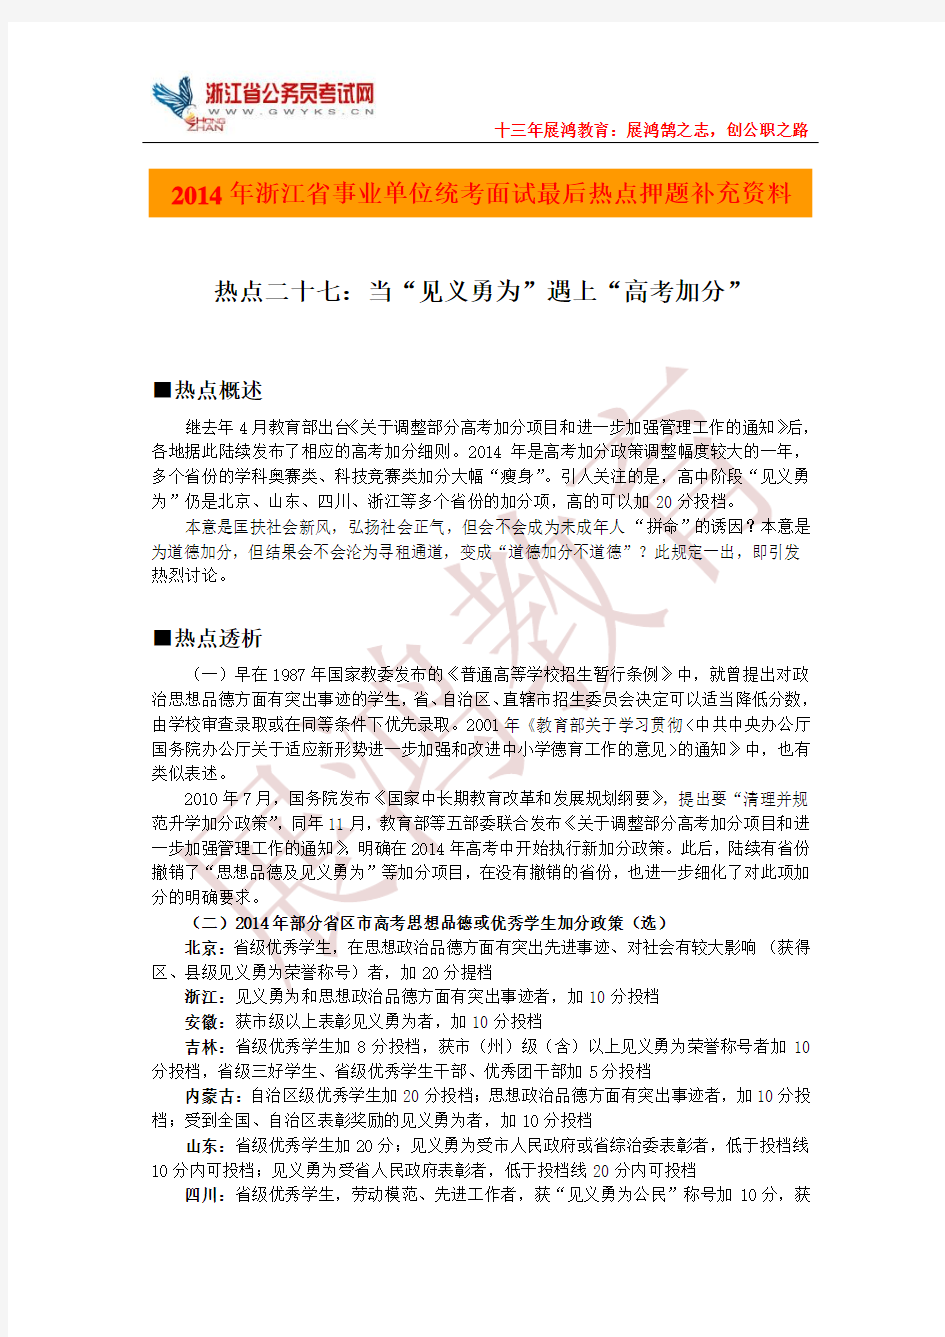 2014年浙江德清县事业单位统考面试最后热点押题补充资料